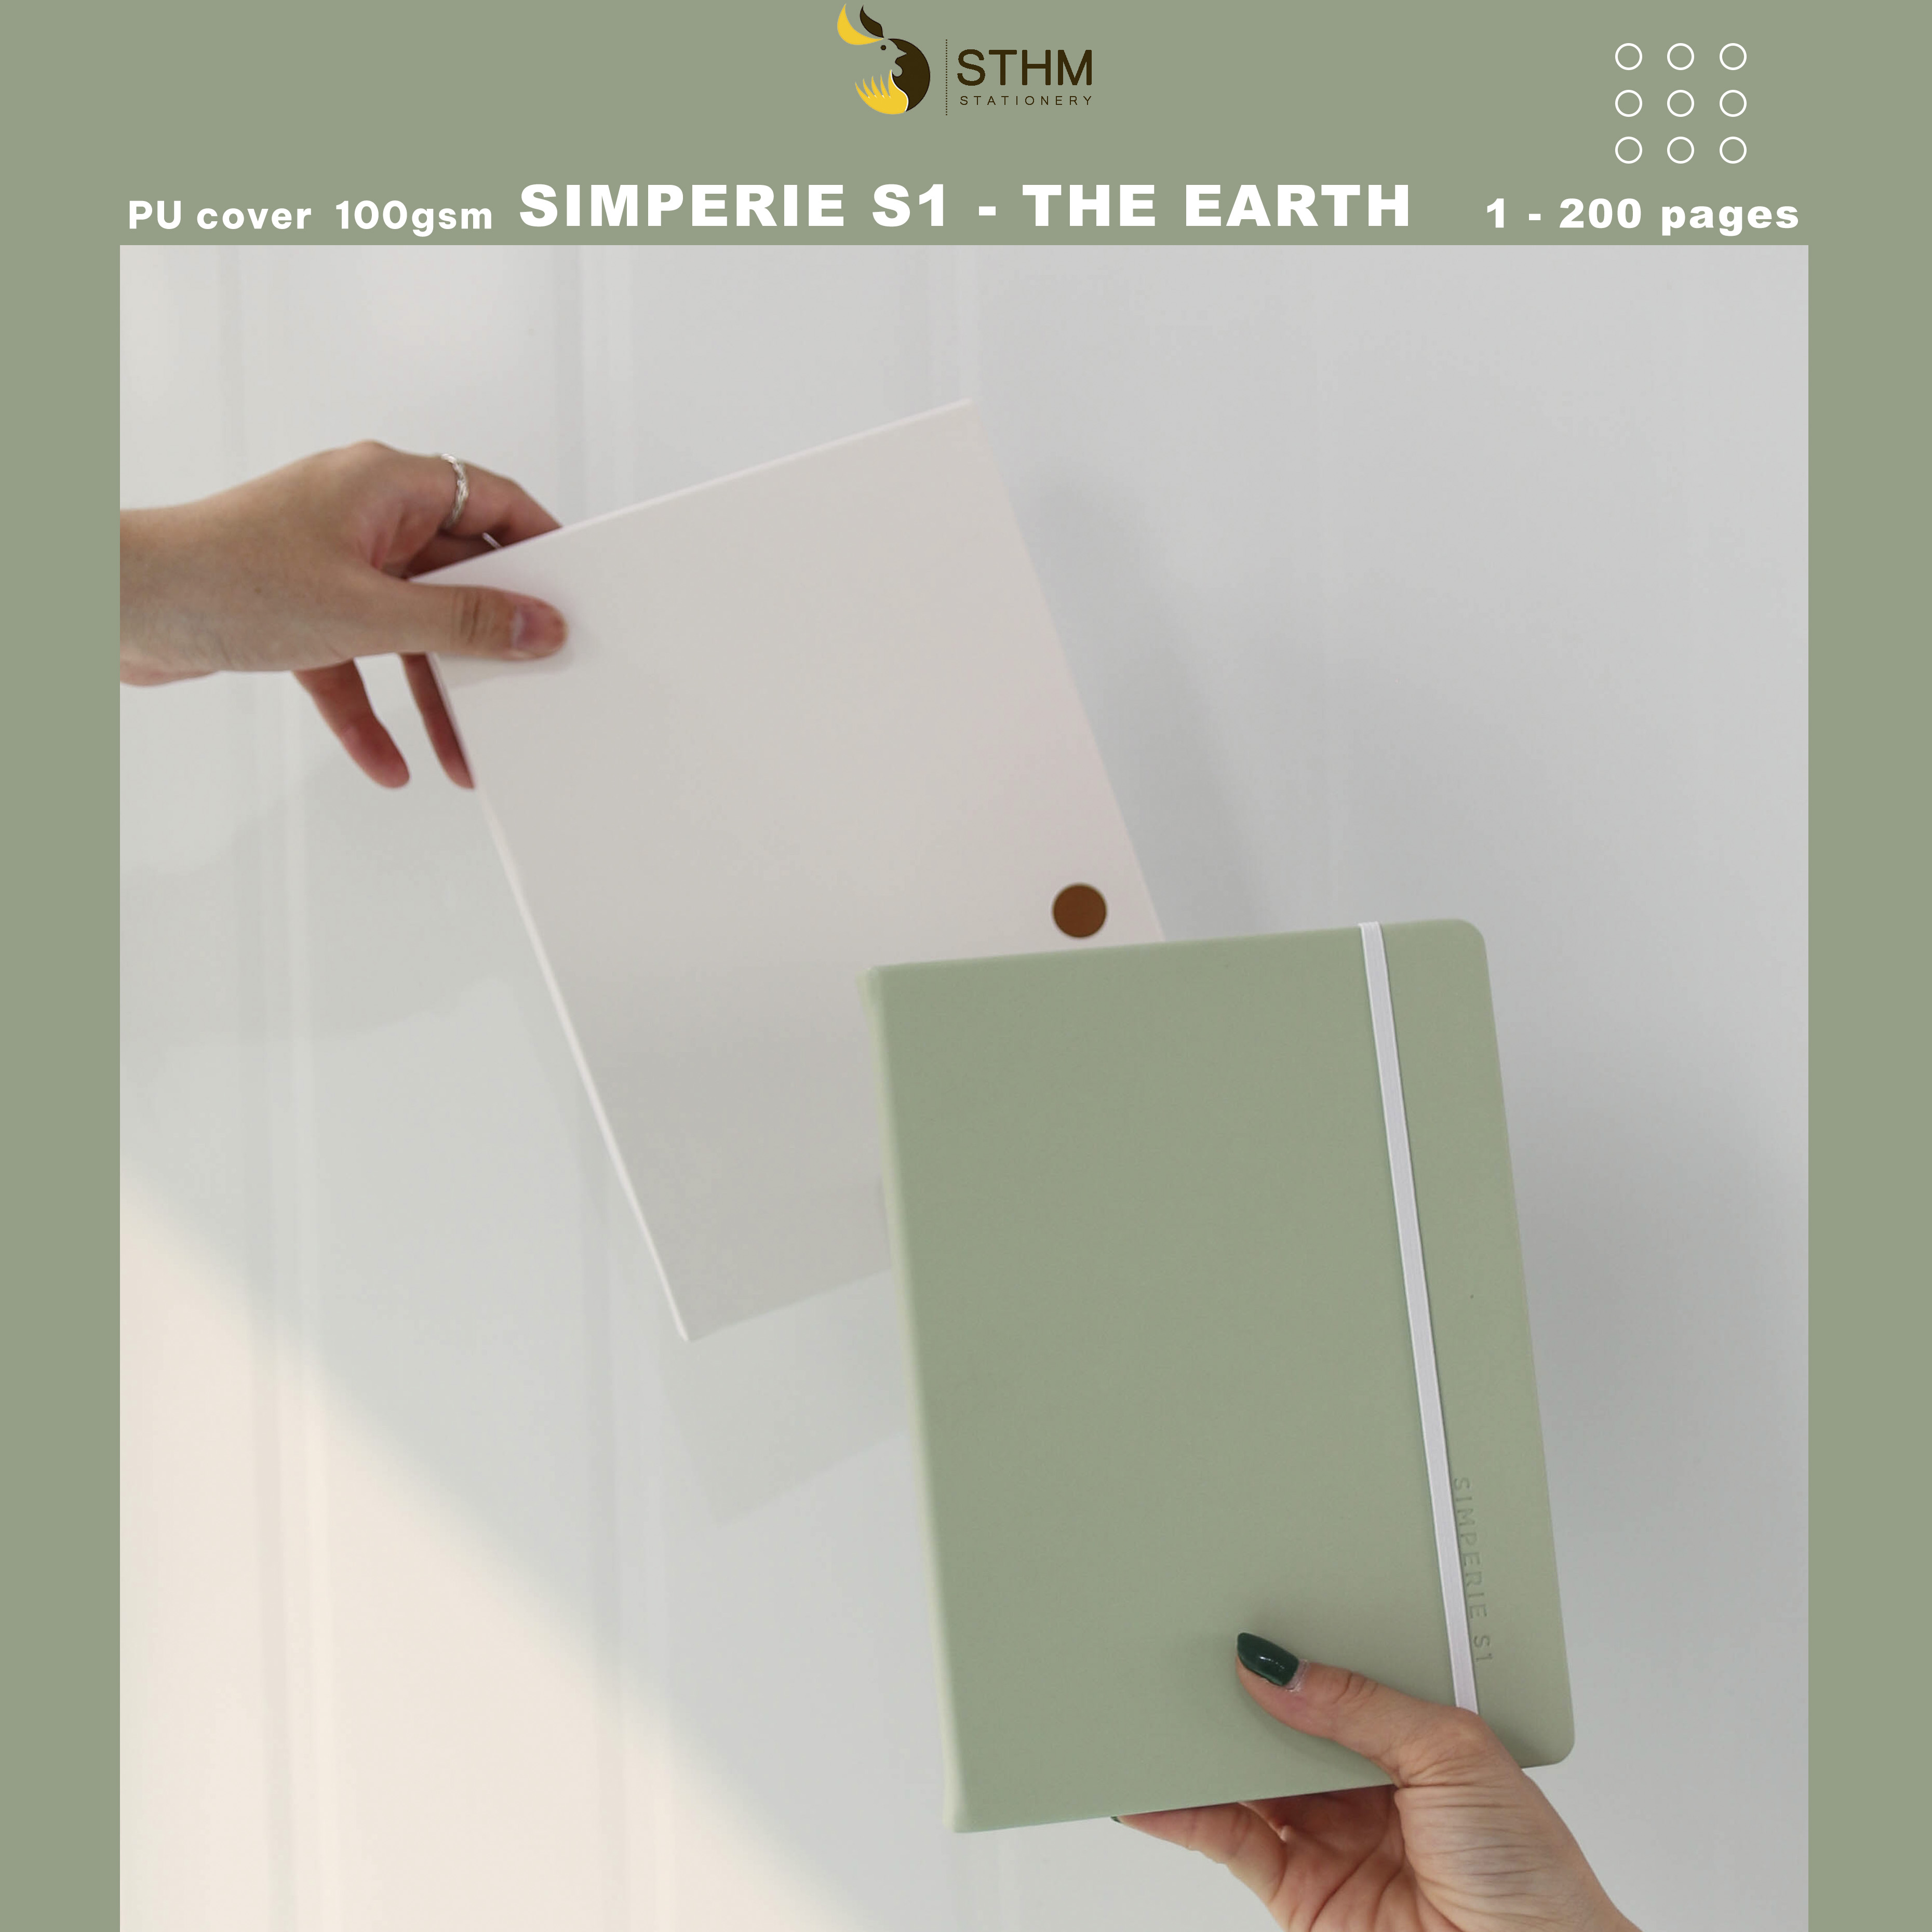 [STHM stationery] - SIMPERIE S1 - The Earth - Sổ tay bìa cứng da PU - 200 trang có đánh số